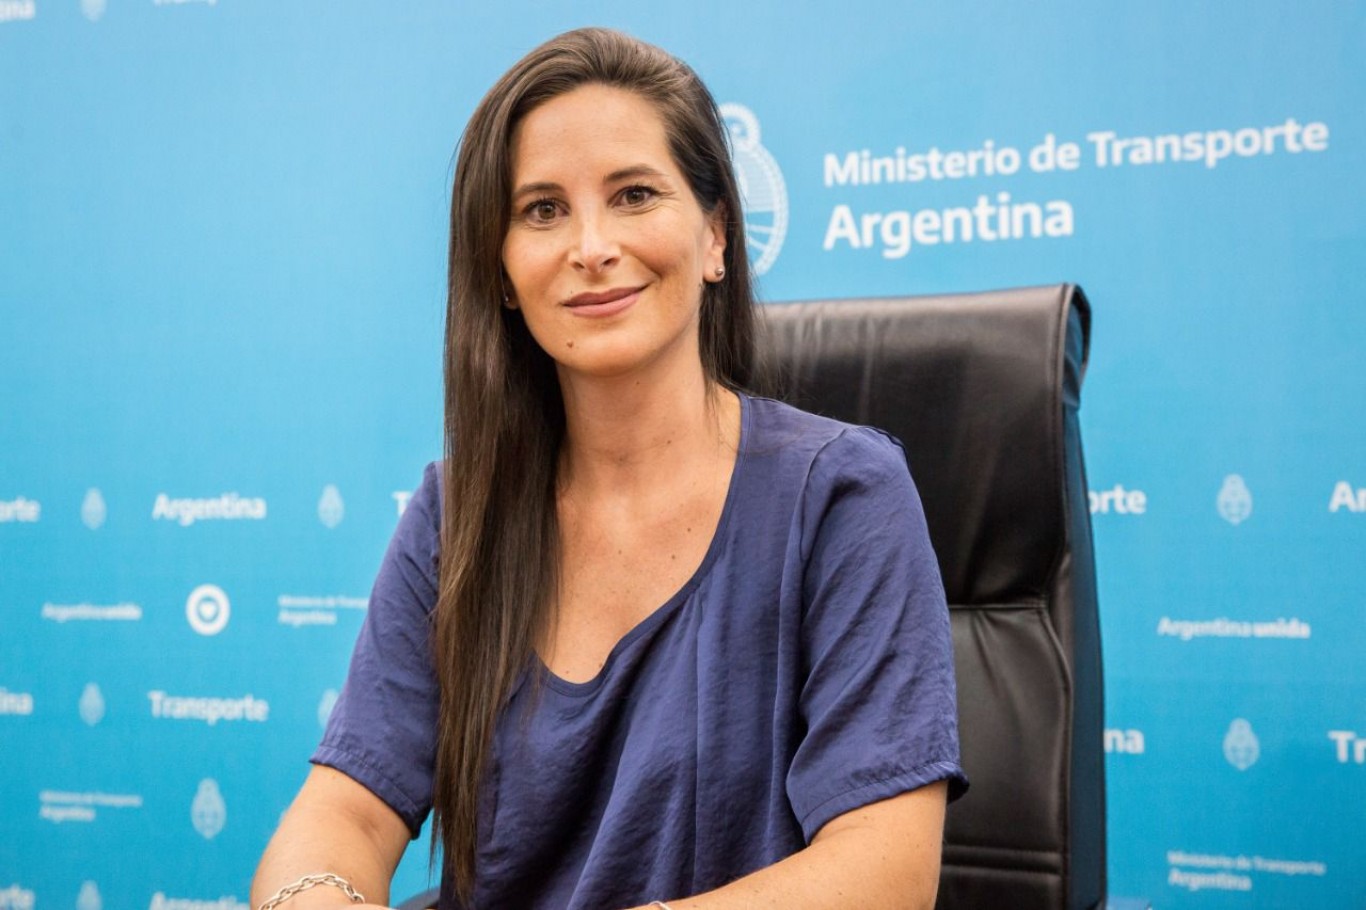 Traspaso de colectivos: "La Ciudad de Buenos Aires tiene que cumplir la ley, es un reclamo de todas las jurisdicciones del país", Micaela Moran